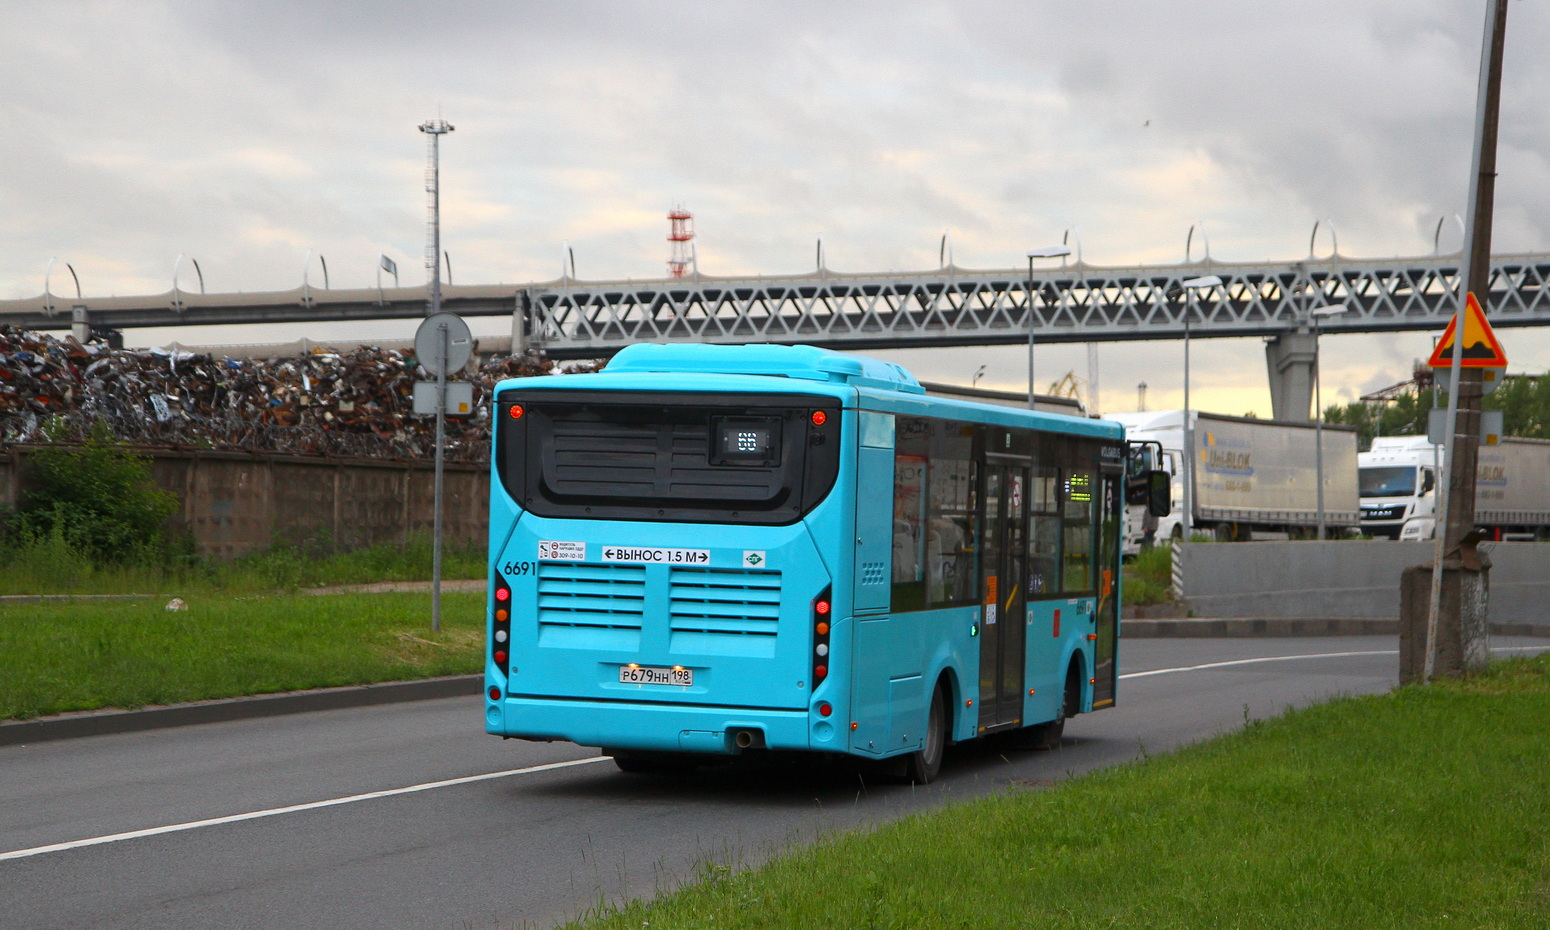 Sankt Peterburgas, Volgabus-4298.G4 (LNG) Nr. 6691